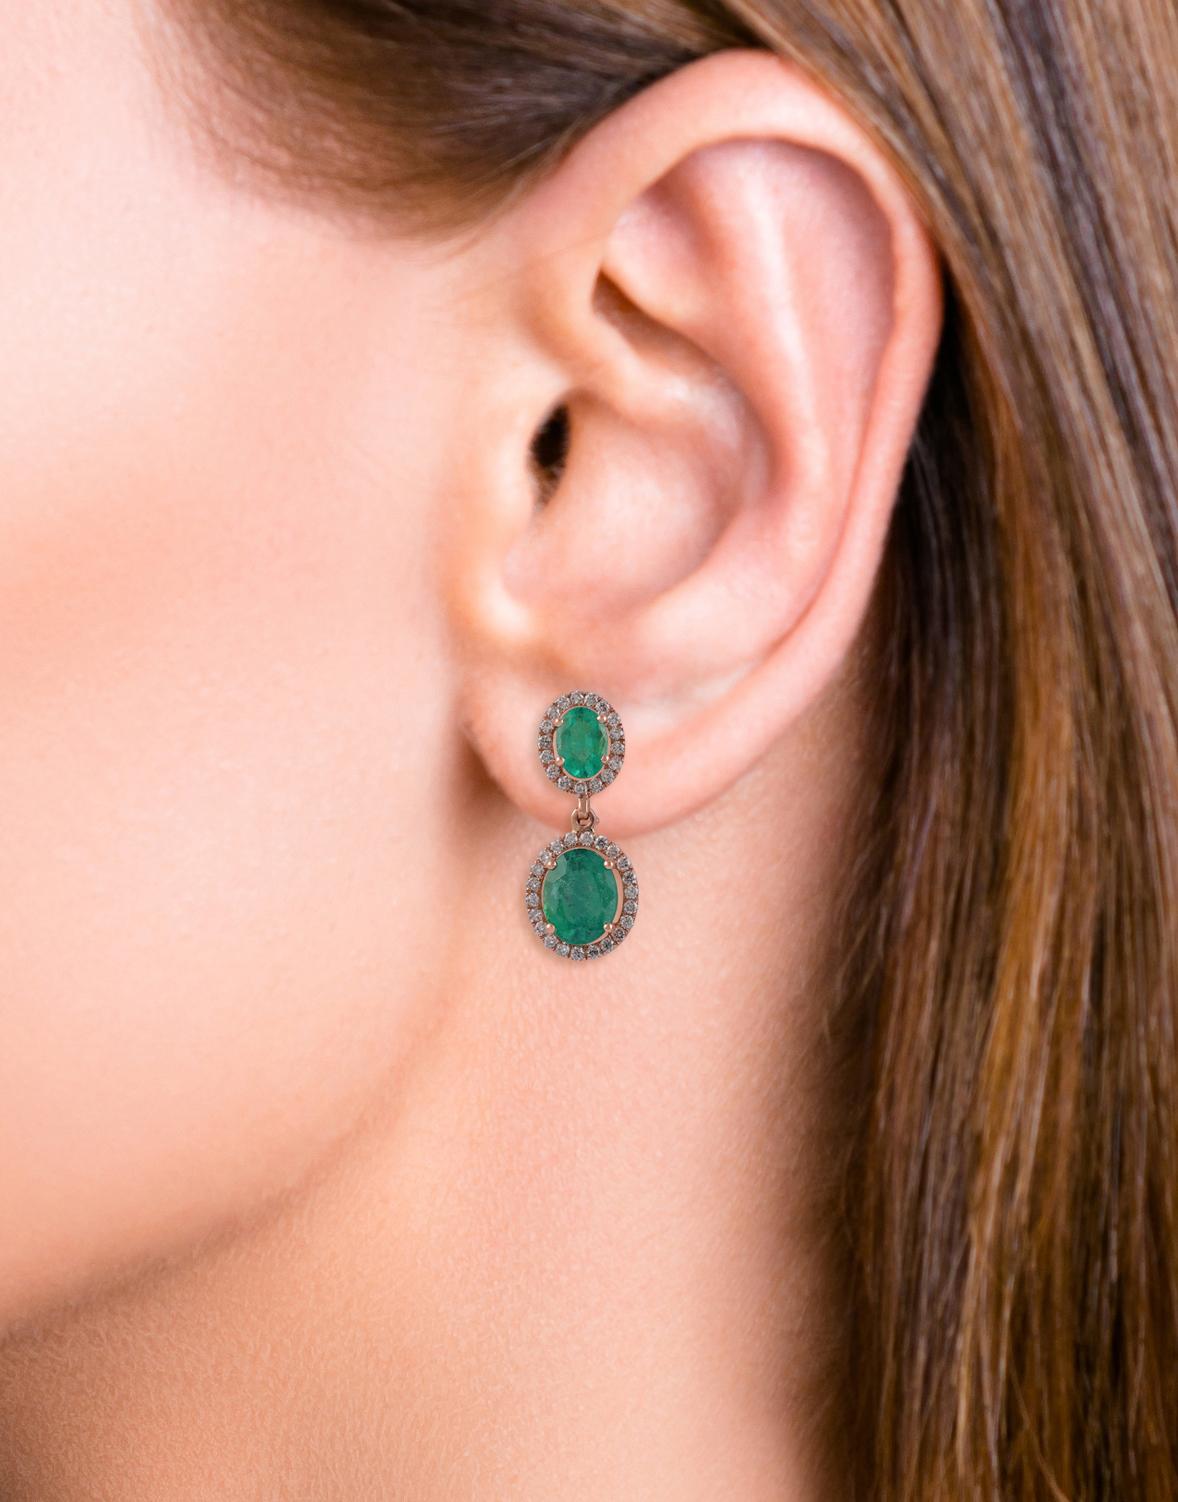 Oval Cut 4.12 Carat Zambian Emerald & Diamond Stud Earrings in 18k Gold For Sale